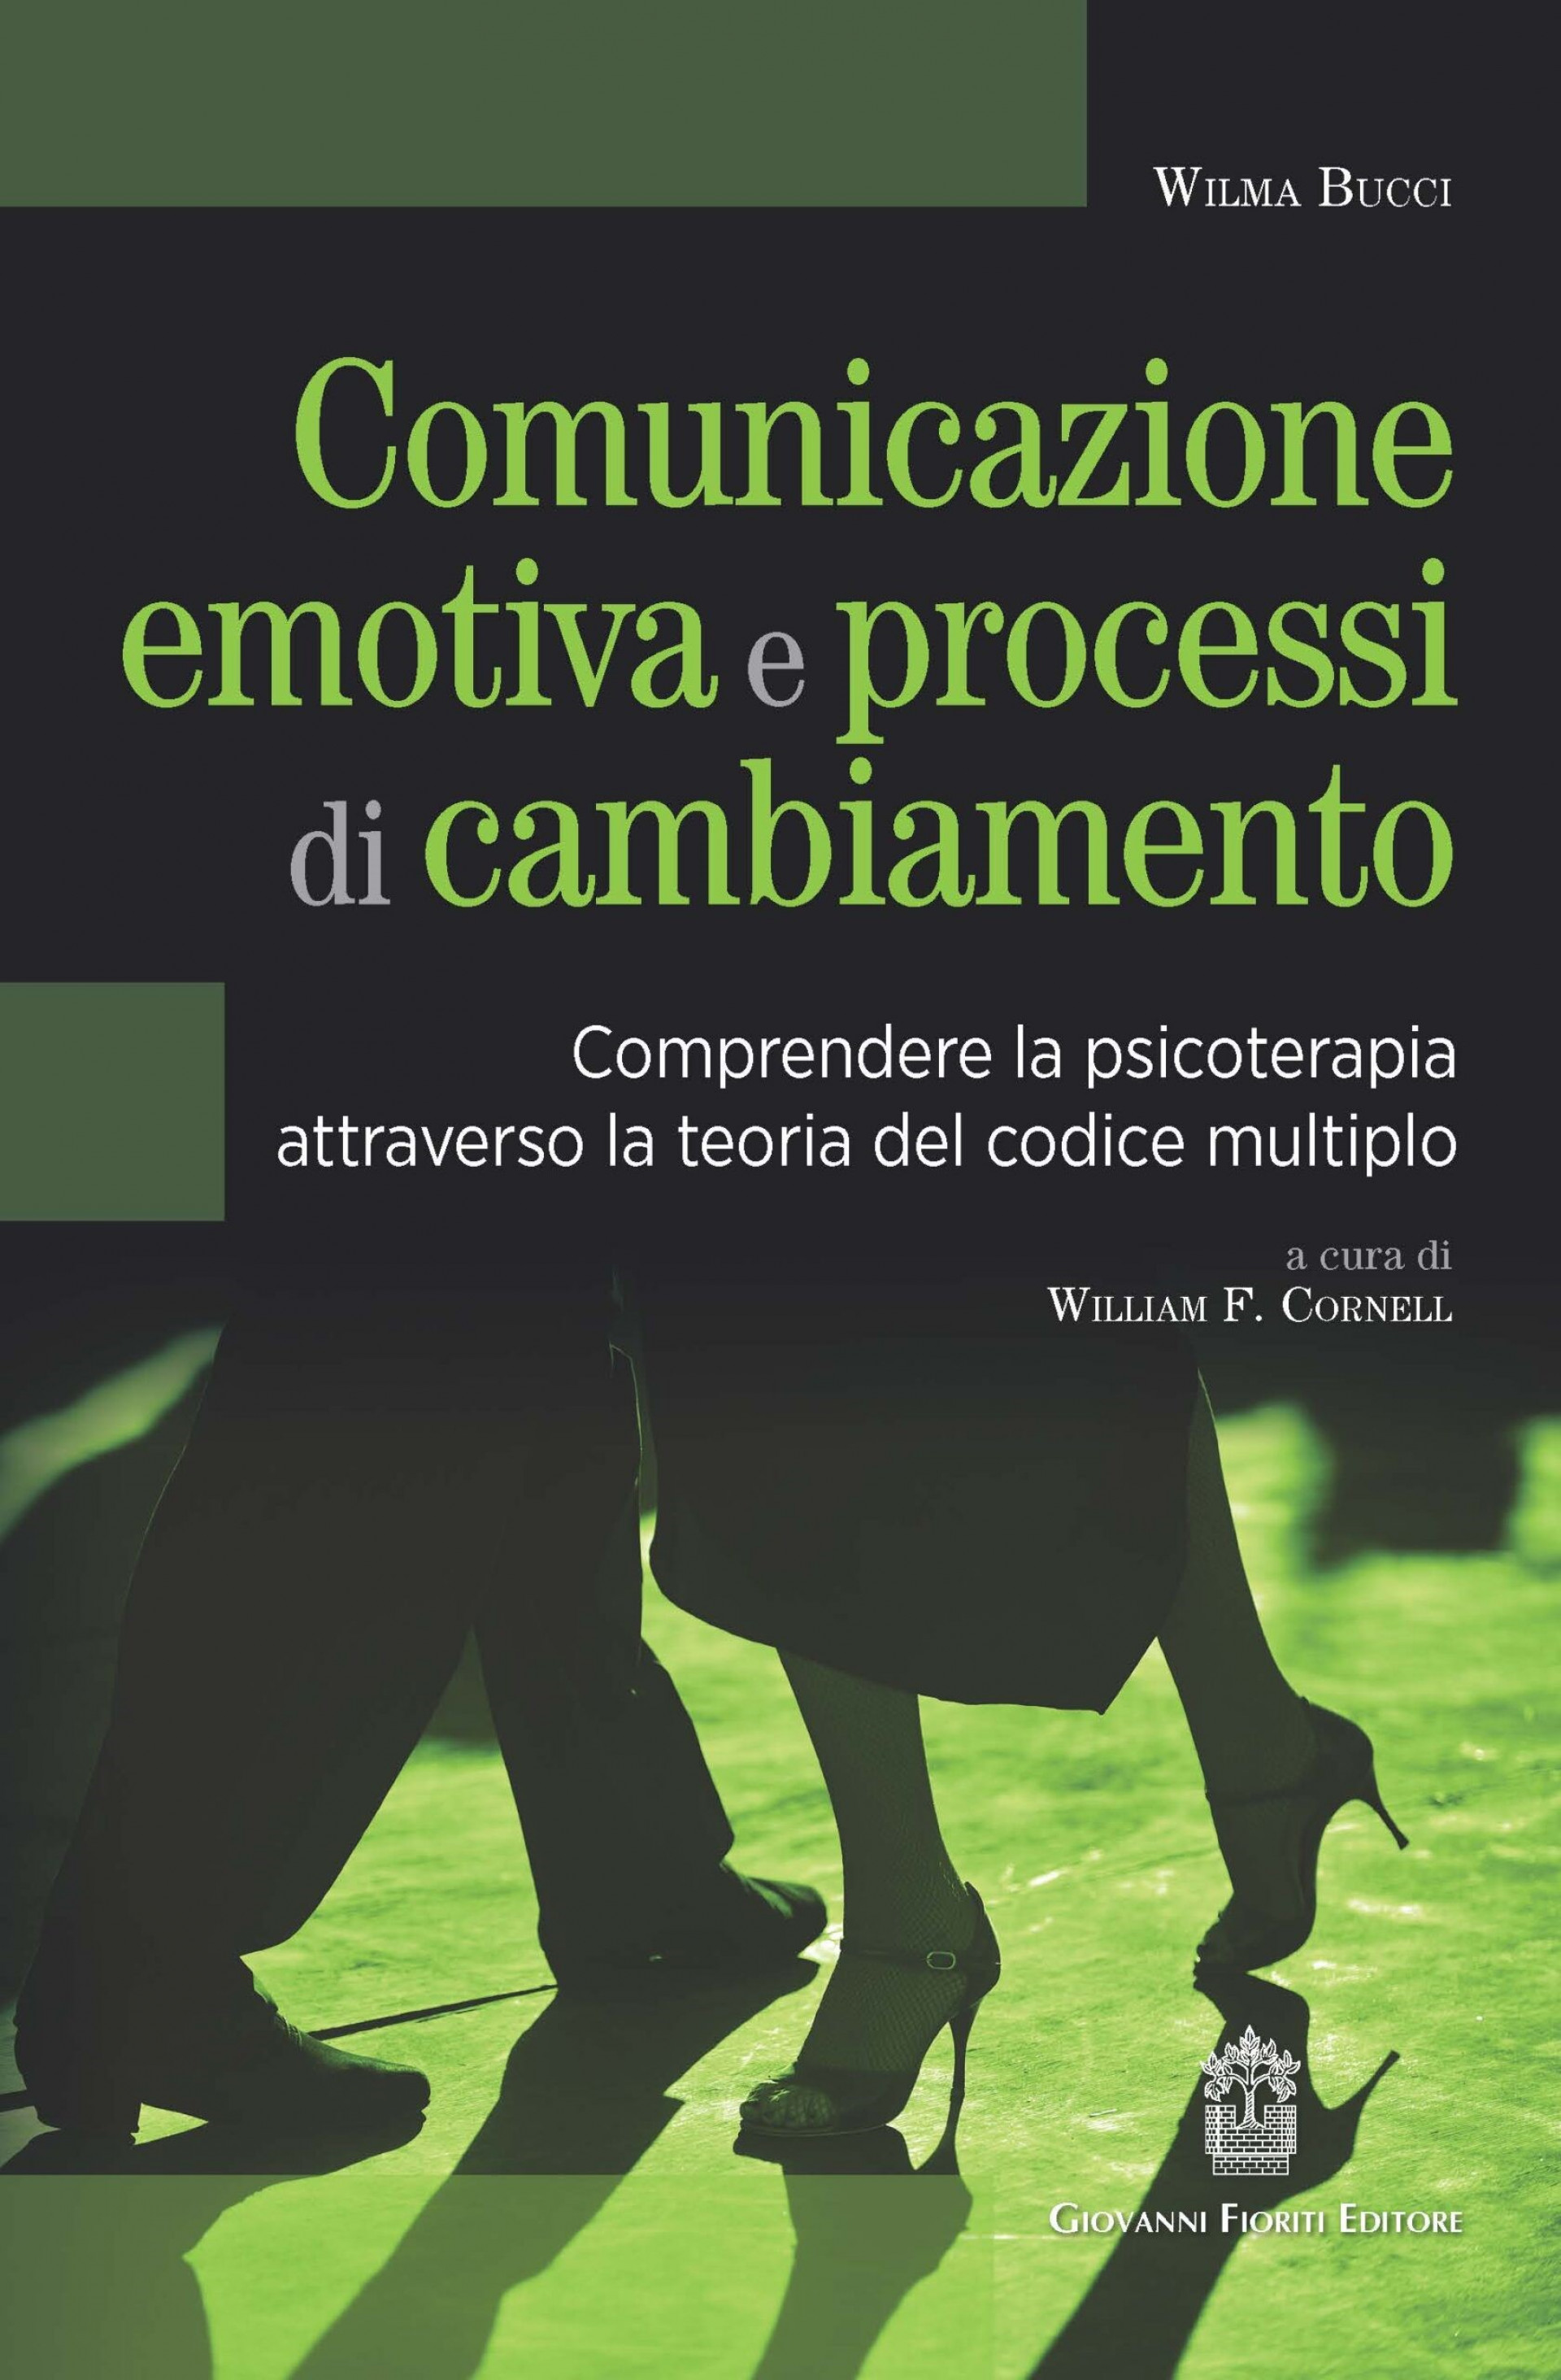 "Comunicazione emotiva e processi di cambiamento" di Wilma Bucci